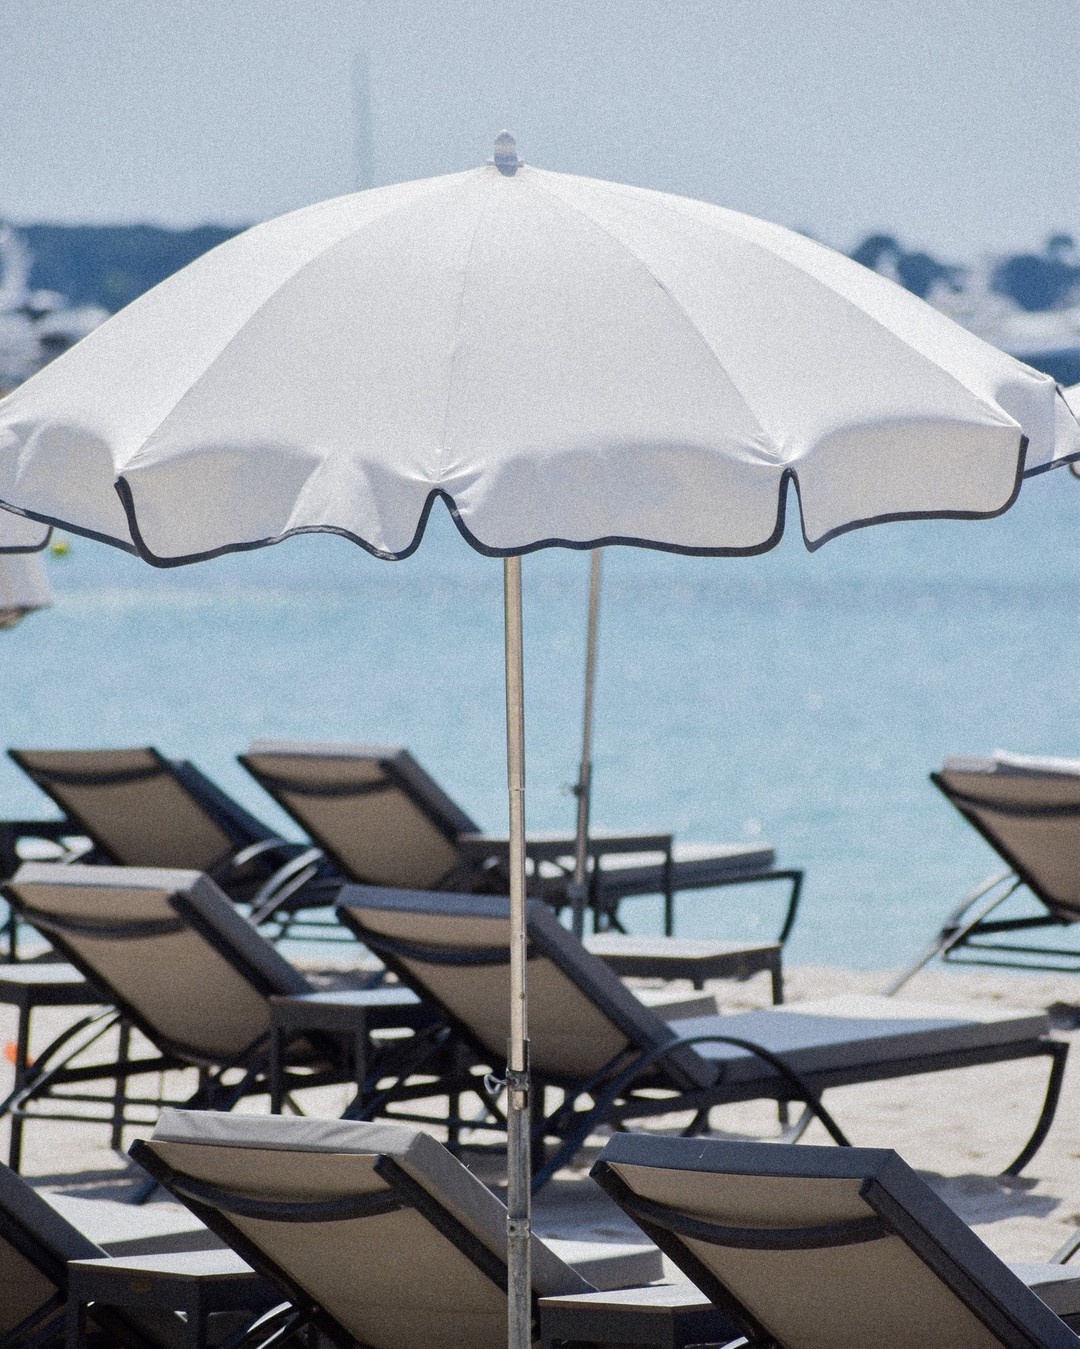 Un weekend au soleil ? 😎 Réservez votre transat et profitez d'un moment #chill au bord de l'eau ☀️
_
Boulevard de la Croisette, Cannes
04.93.43.67.05
www.vegaluna.fr  #sunbath #restaurant #cannes #plage #frenchriviera #summervibes #relax